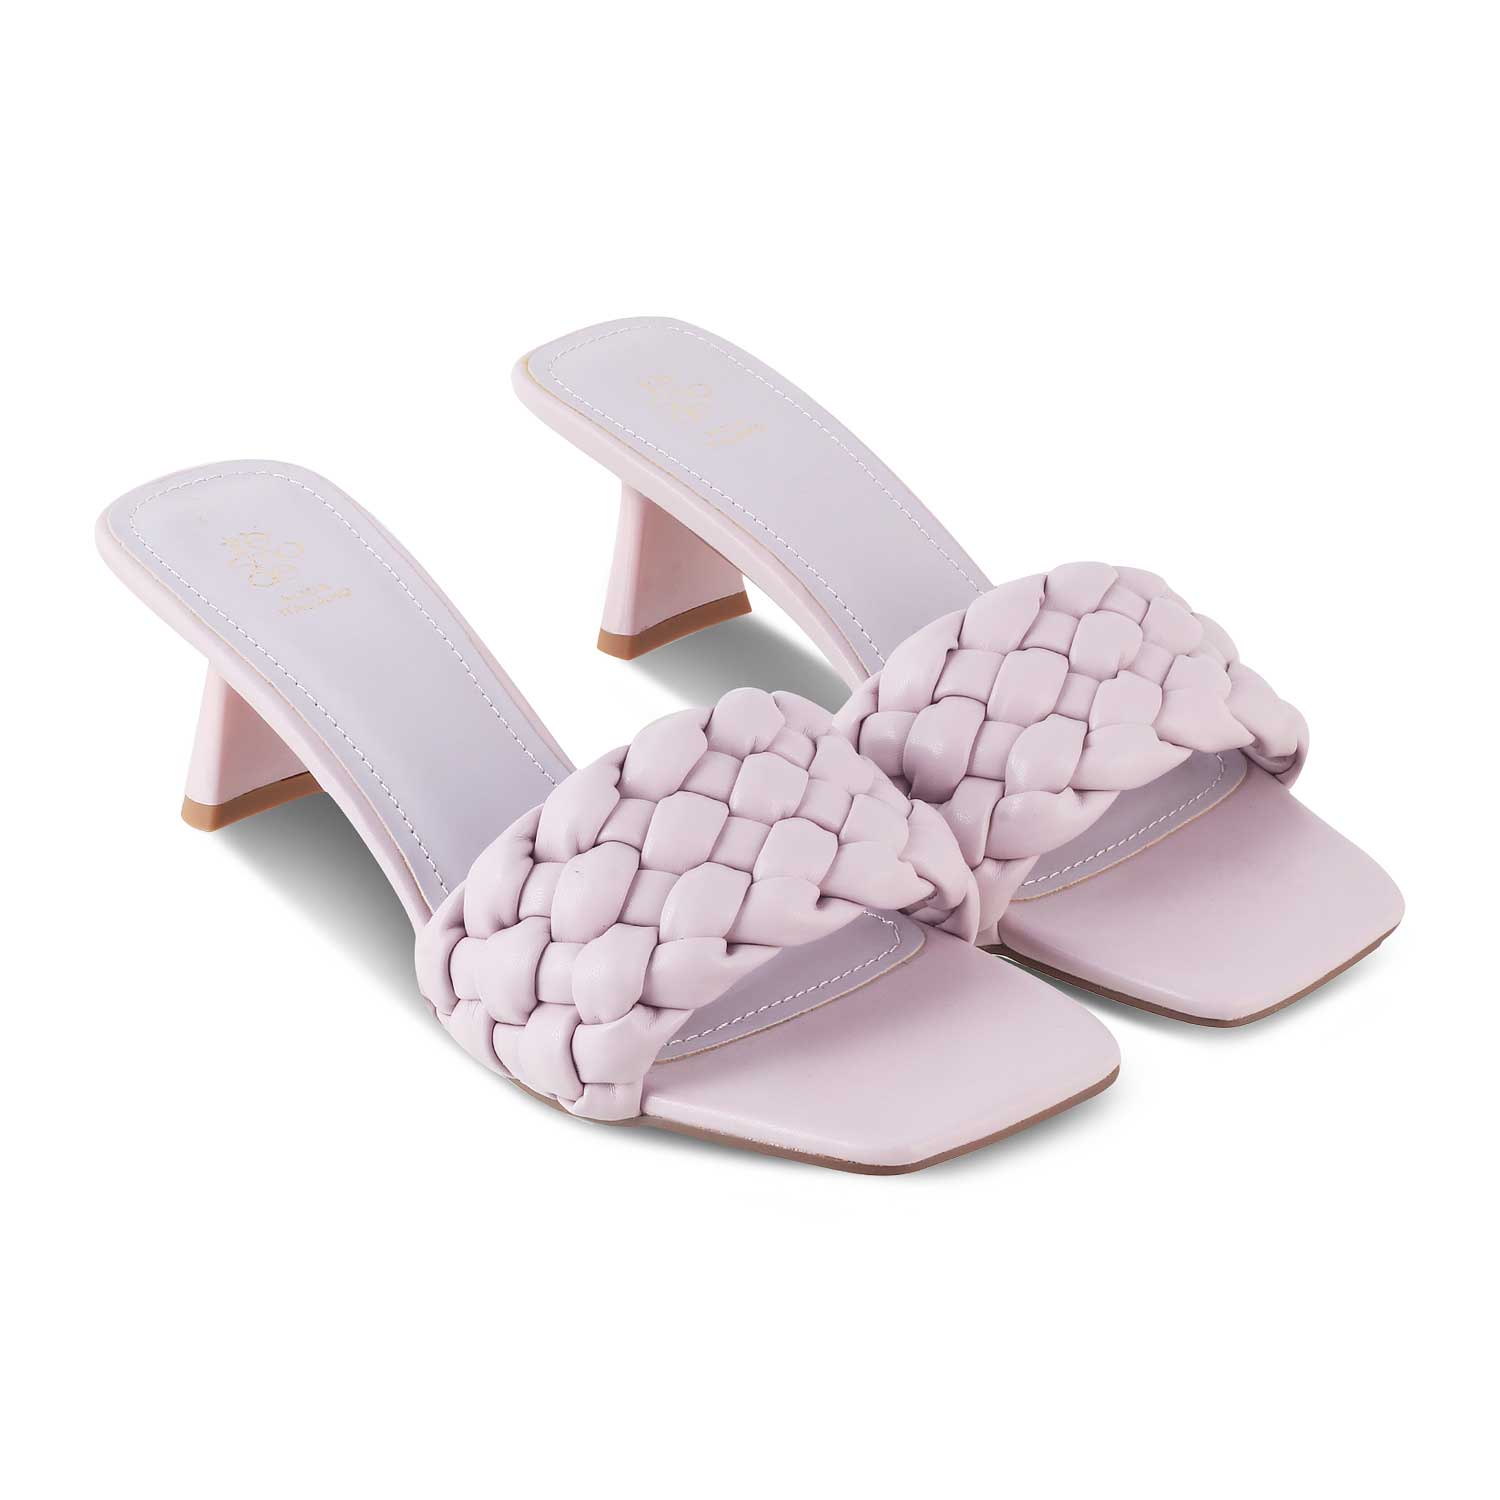 The Royena Pink Women's Dress Heel Sandals Tresmode